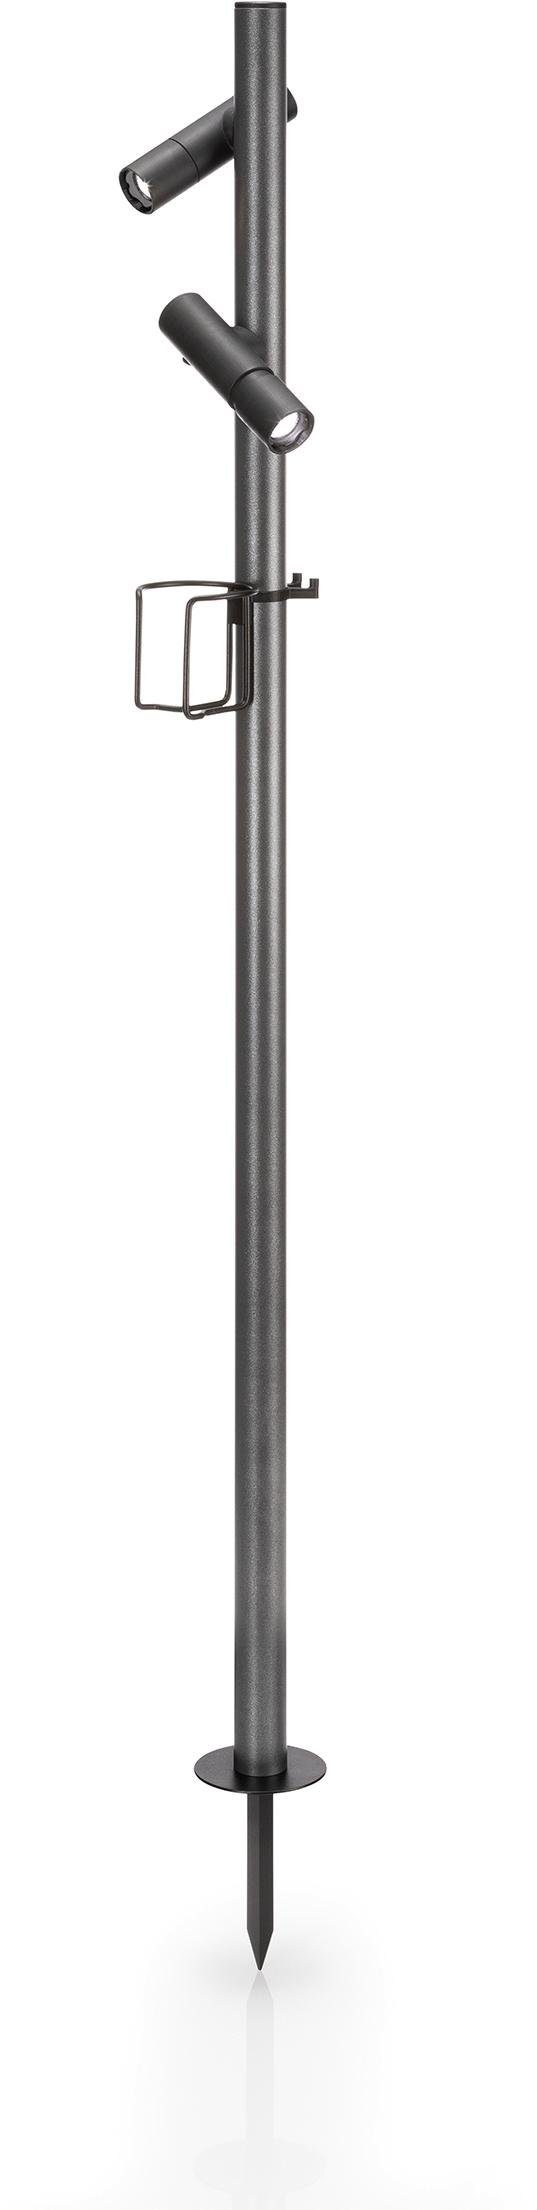 EVOTEC Gartenleuchte »PAUL«, Outdoorleuchte ideal zum Grillen, 2 LED Taschenlampen, 2 USB-Ladekabel, Multiring mit Flaschenhalter und 3 Haken-kaufen